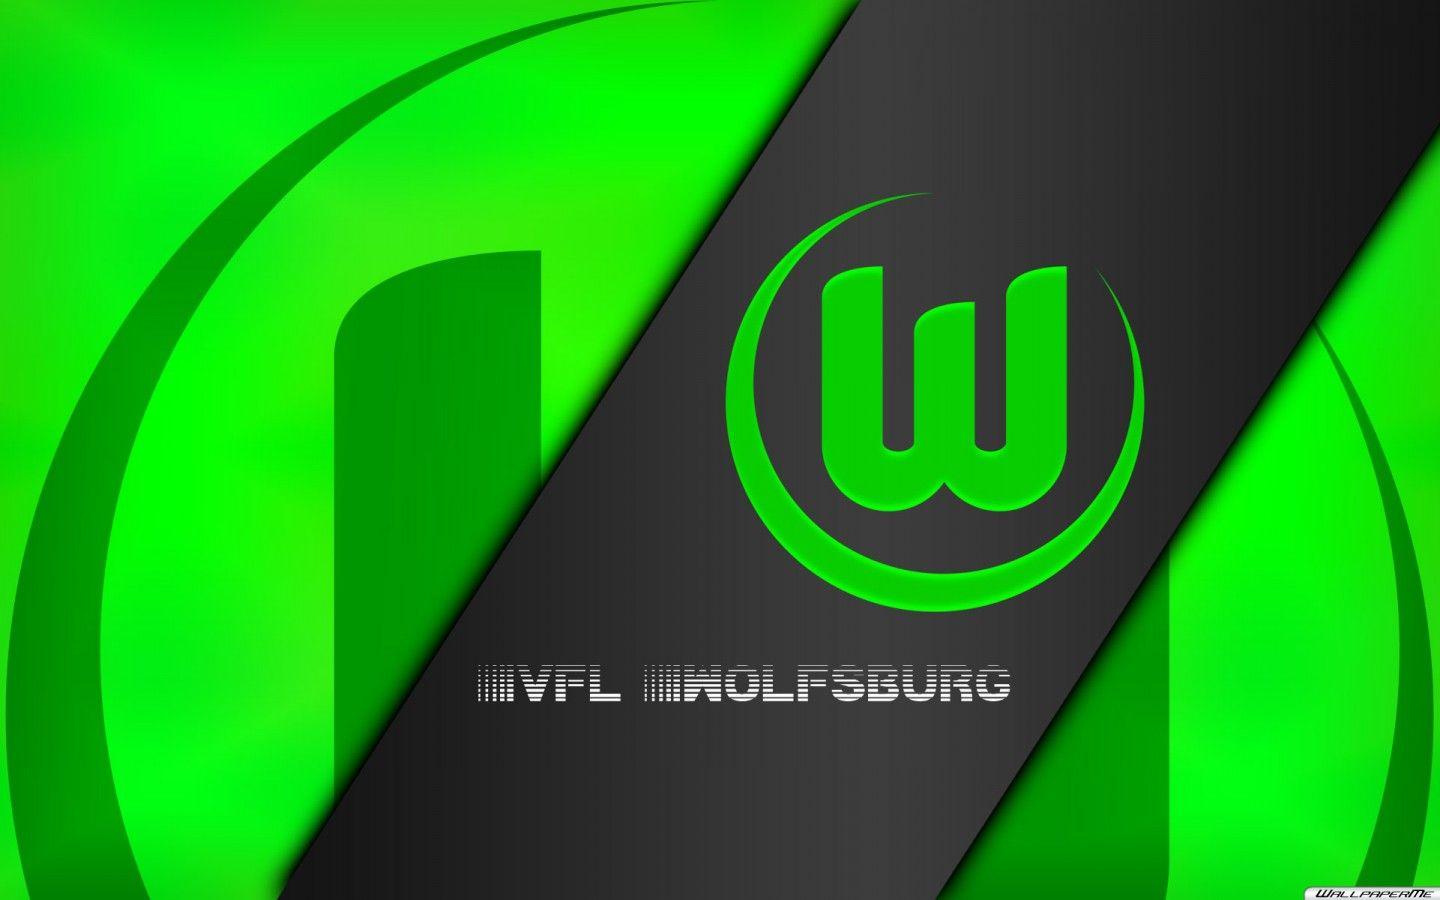 VfL Wolfsburg Logo High Resolution Background